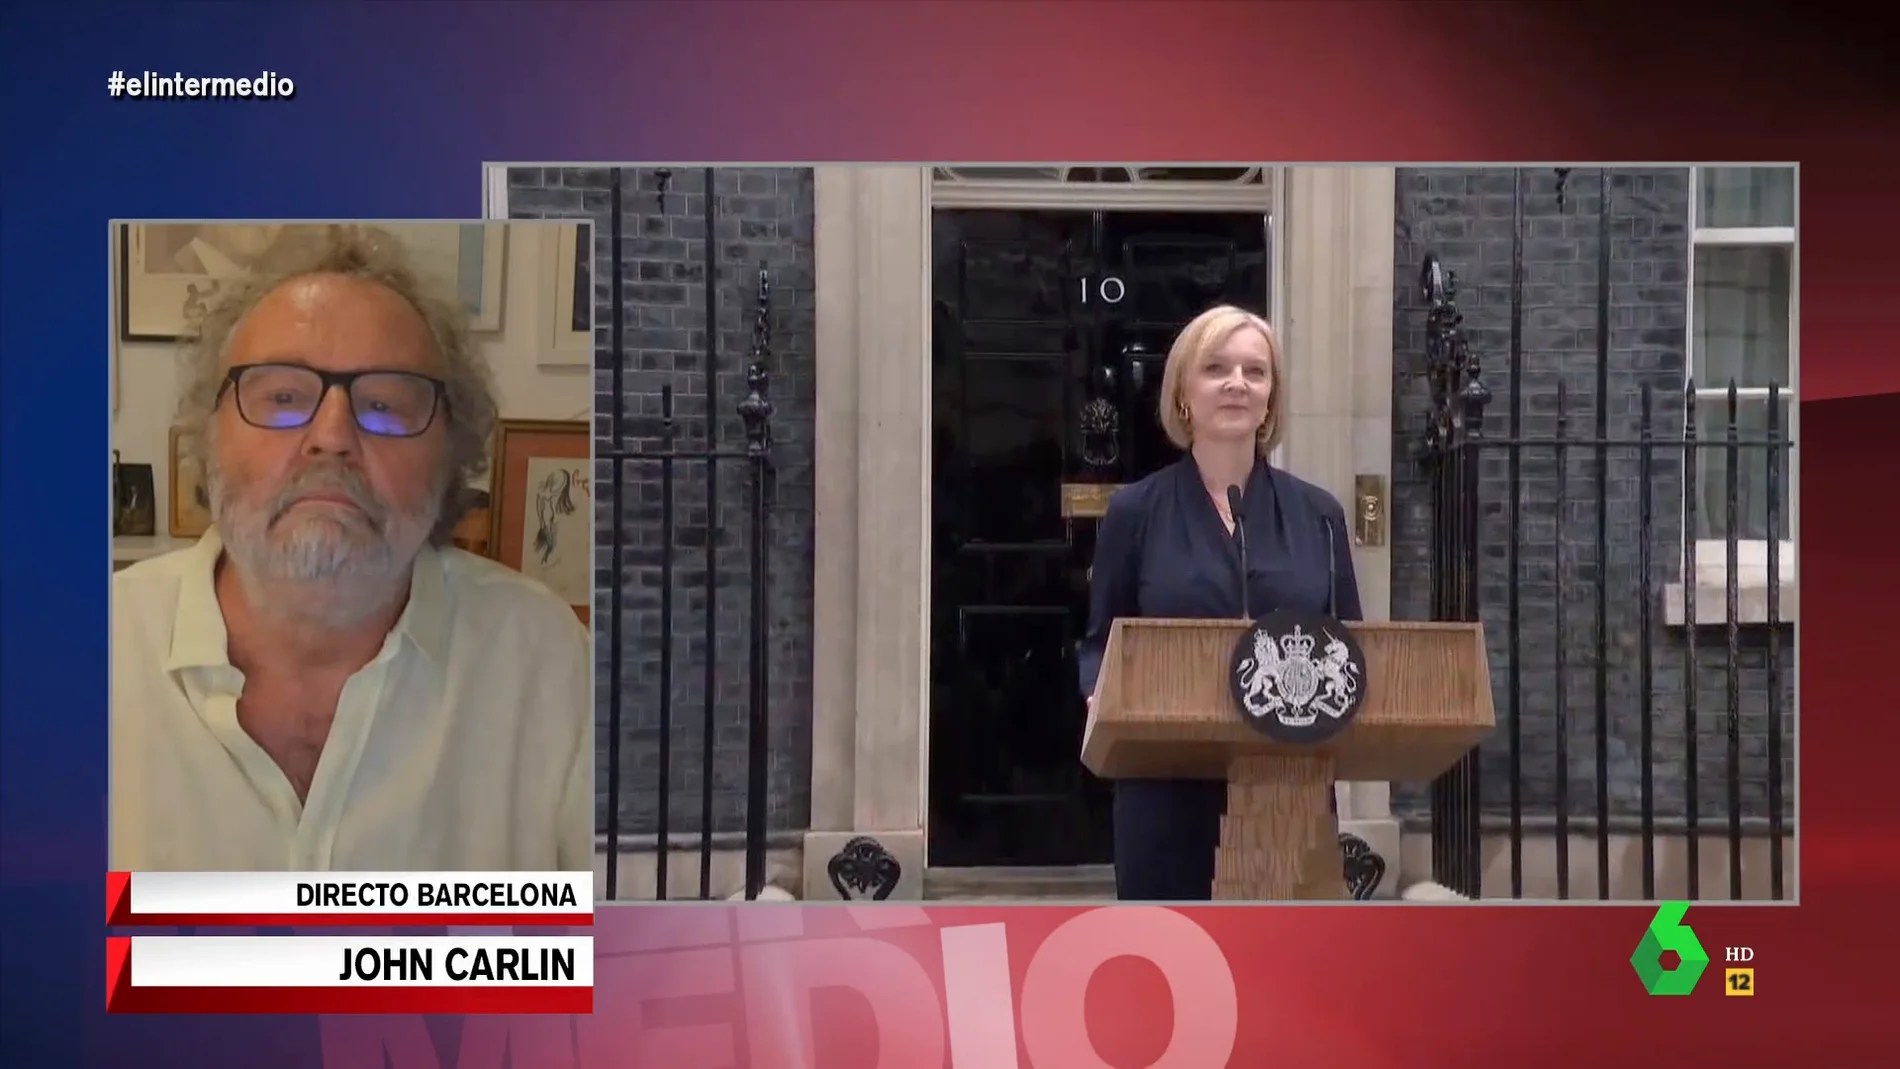 John Carlin analiza a Liz Truss, nueva ministra de Reino Unido: "Es como Johnson, todo ego y egocentrismo, pero sin su carisma"